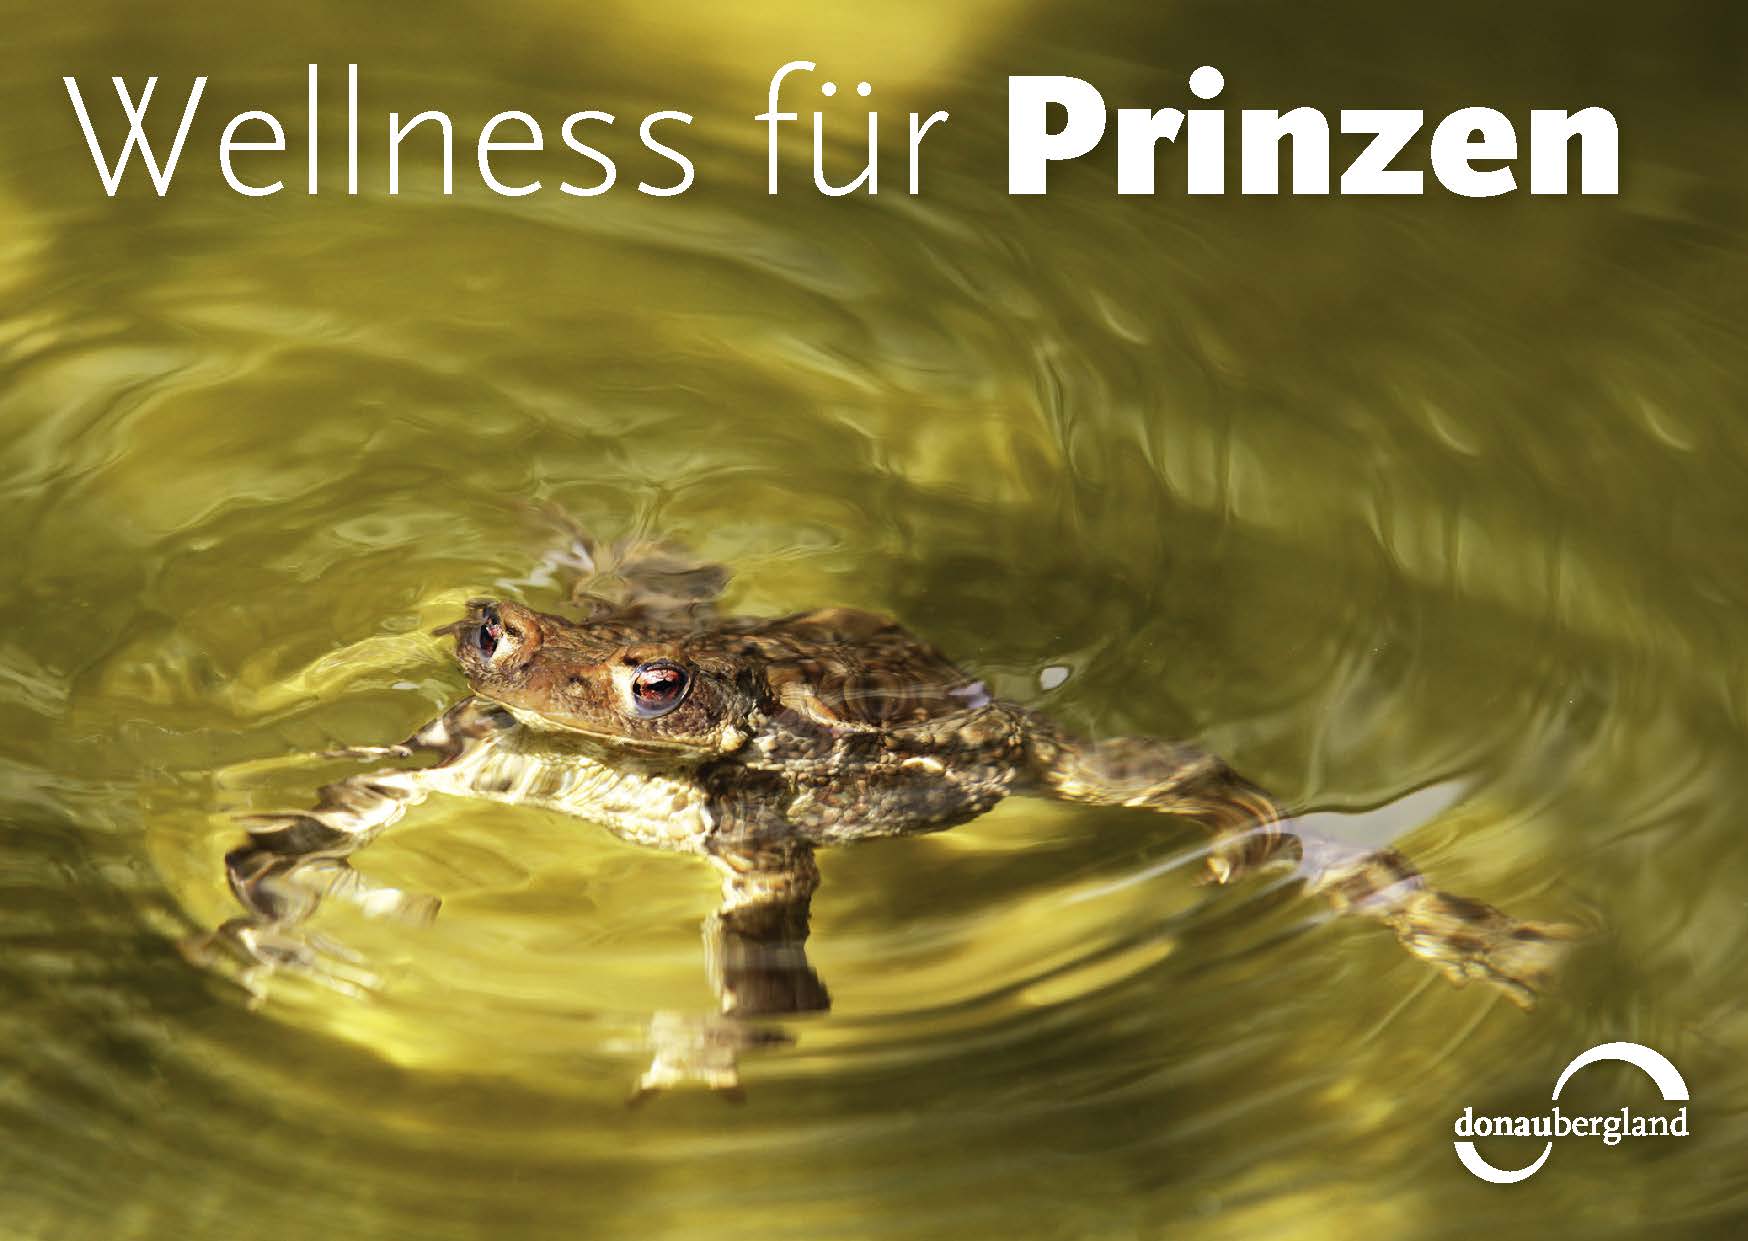 Donaubergland Postkartenmotiv mit Frosch in grünlichem Wasser.